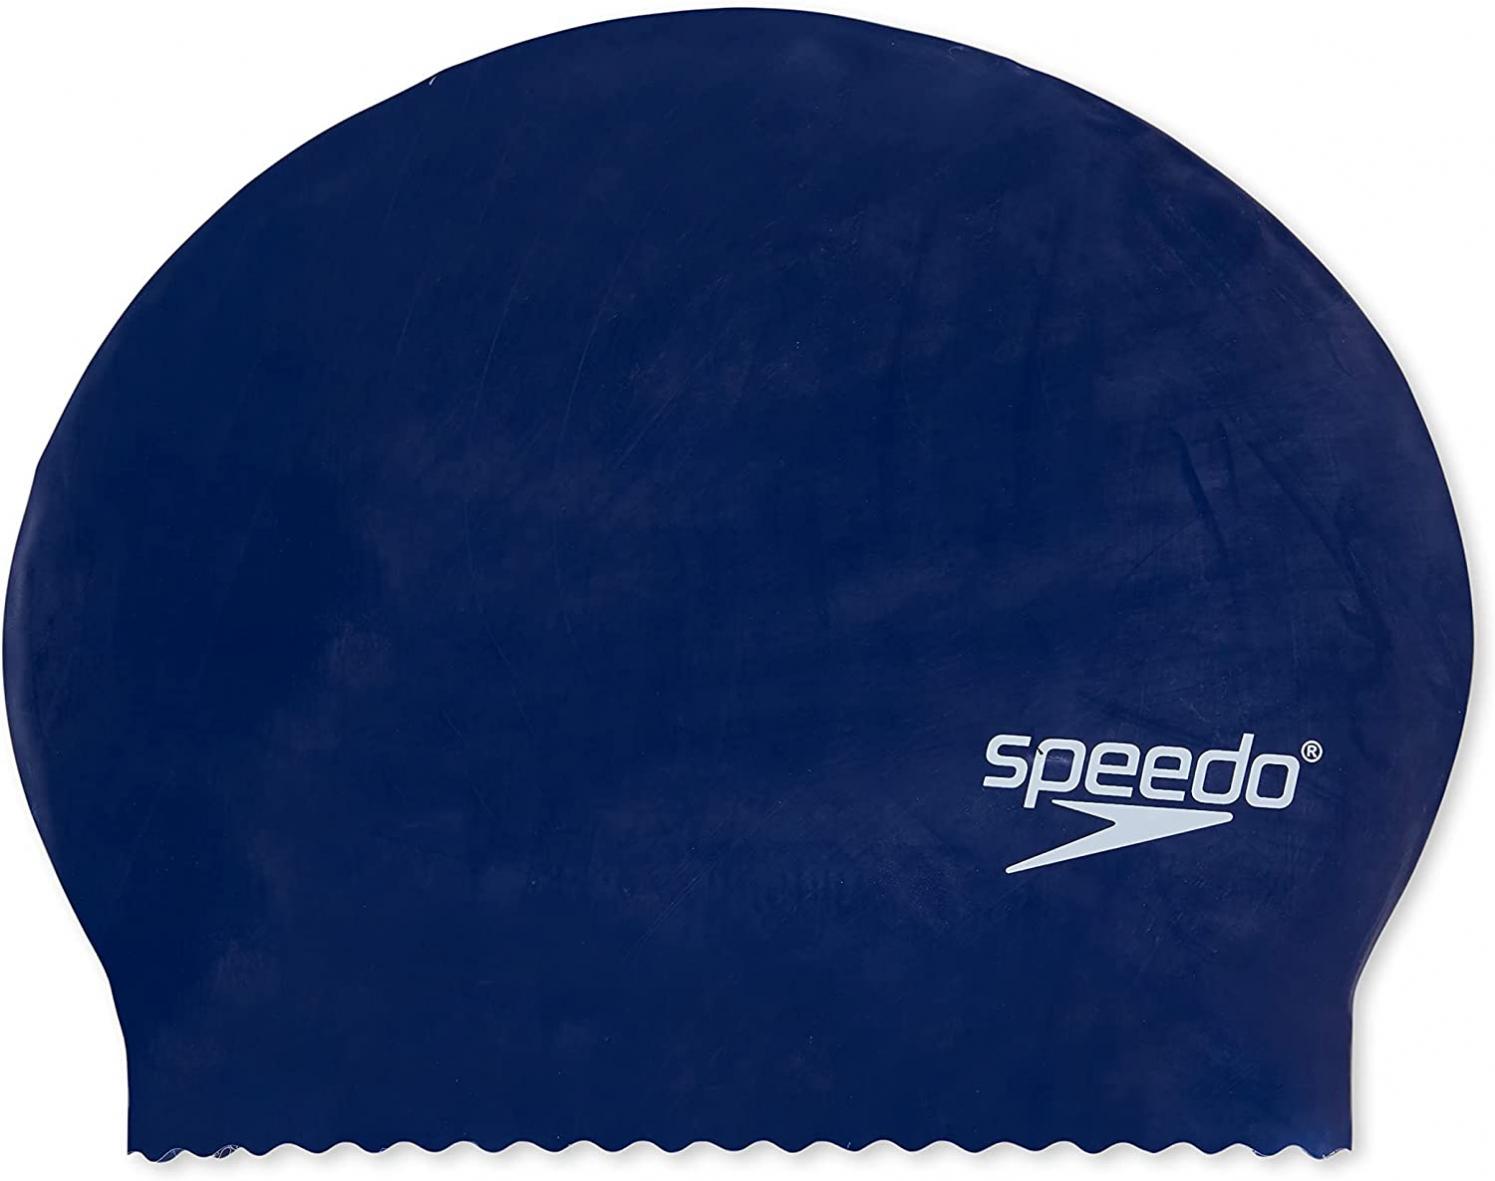 Speedo unisex Speedo Latex Solid Cap, Navy, One Size swim caps, Navy, One Size US